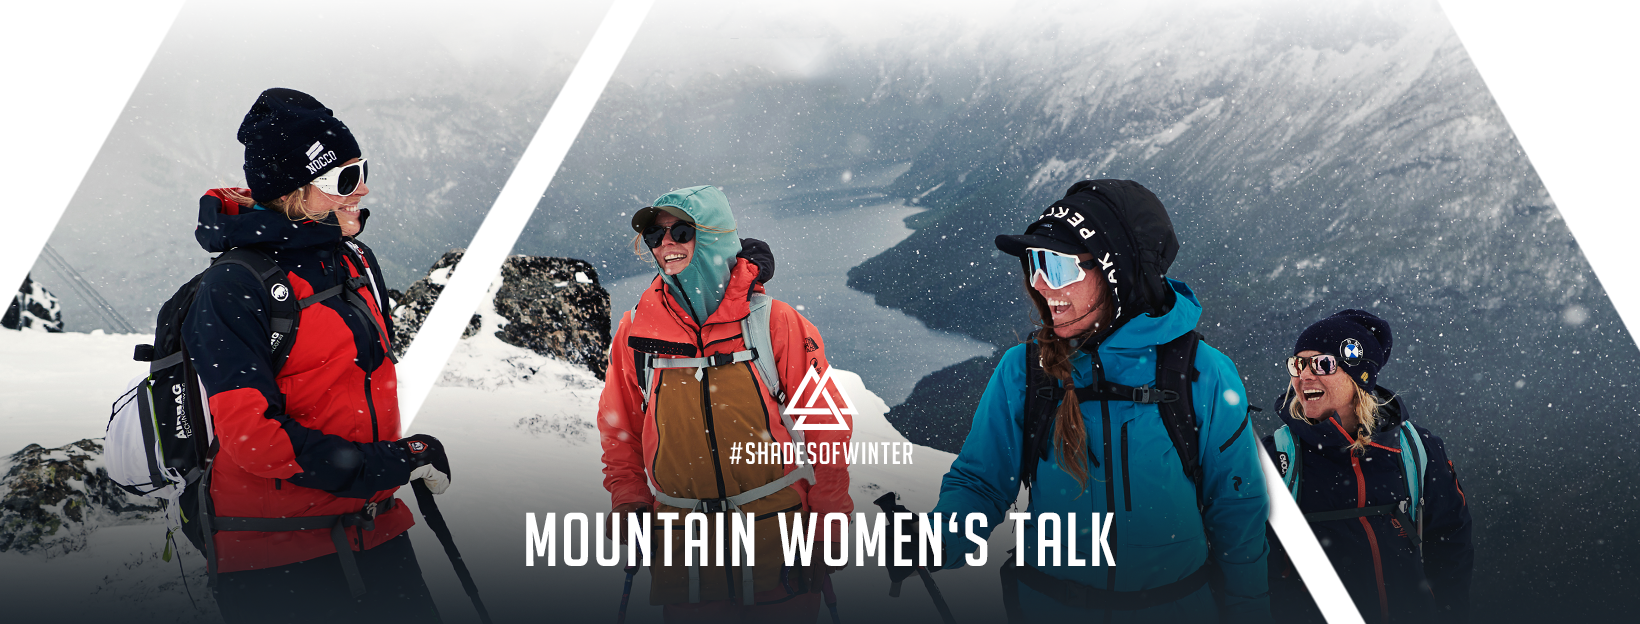 women mountain